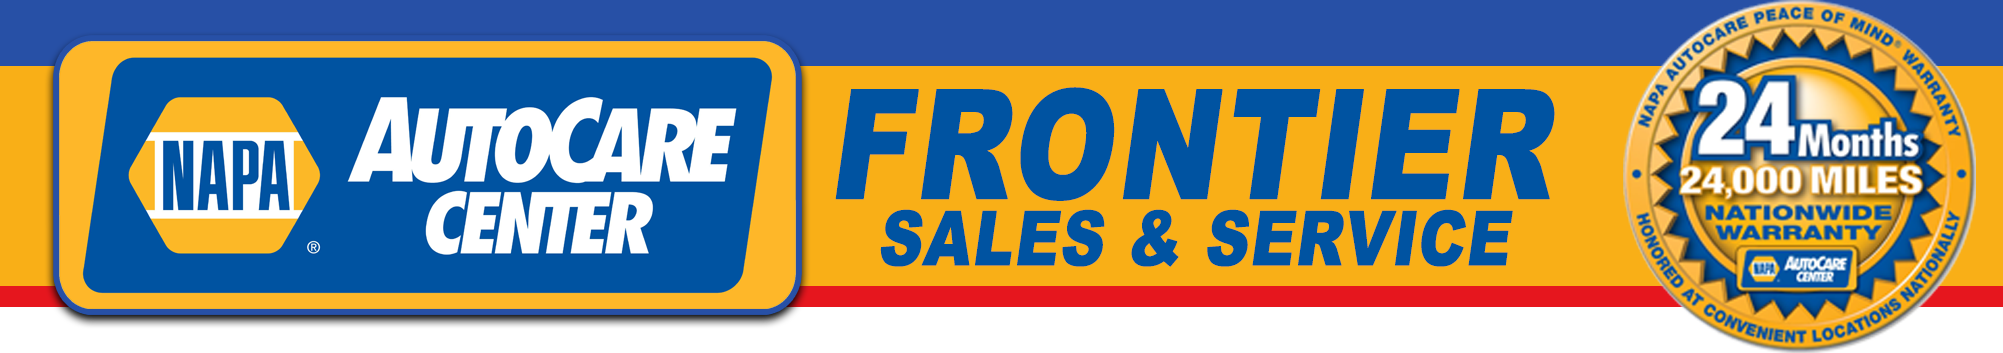 Frontier Auto Sales